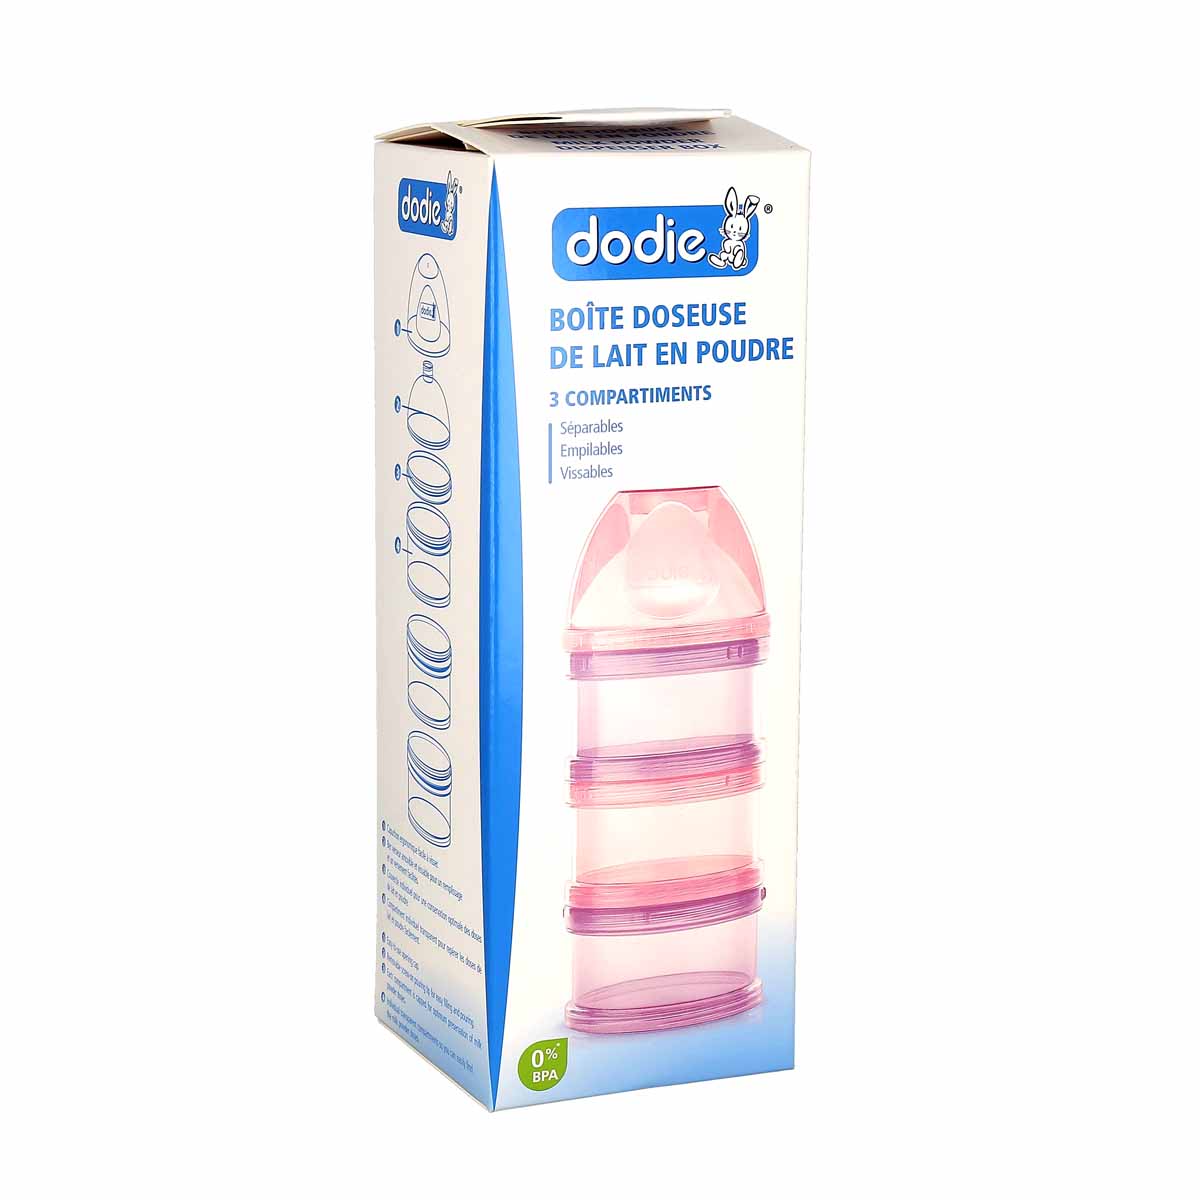 Dodie Boite Doseuse 3 Compartiments Rose - La Pharmacie de Pierre